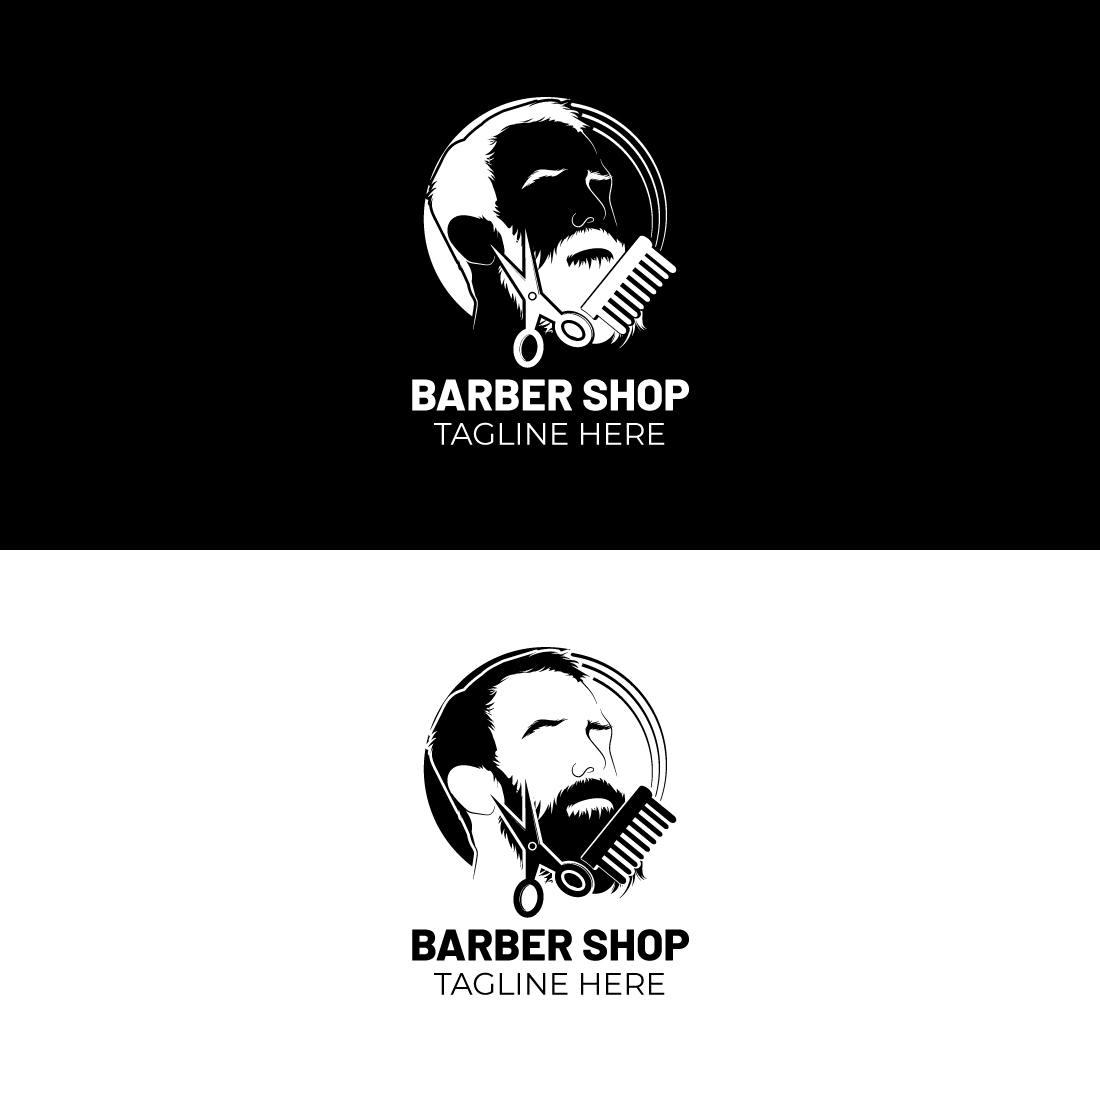 Barber Shop Logo cover image.